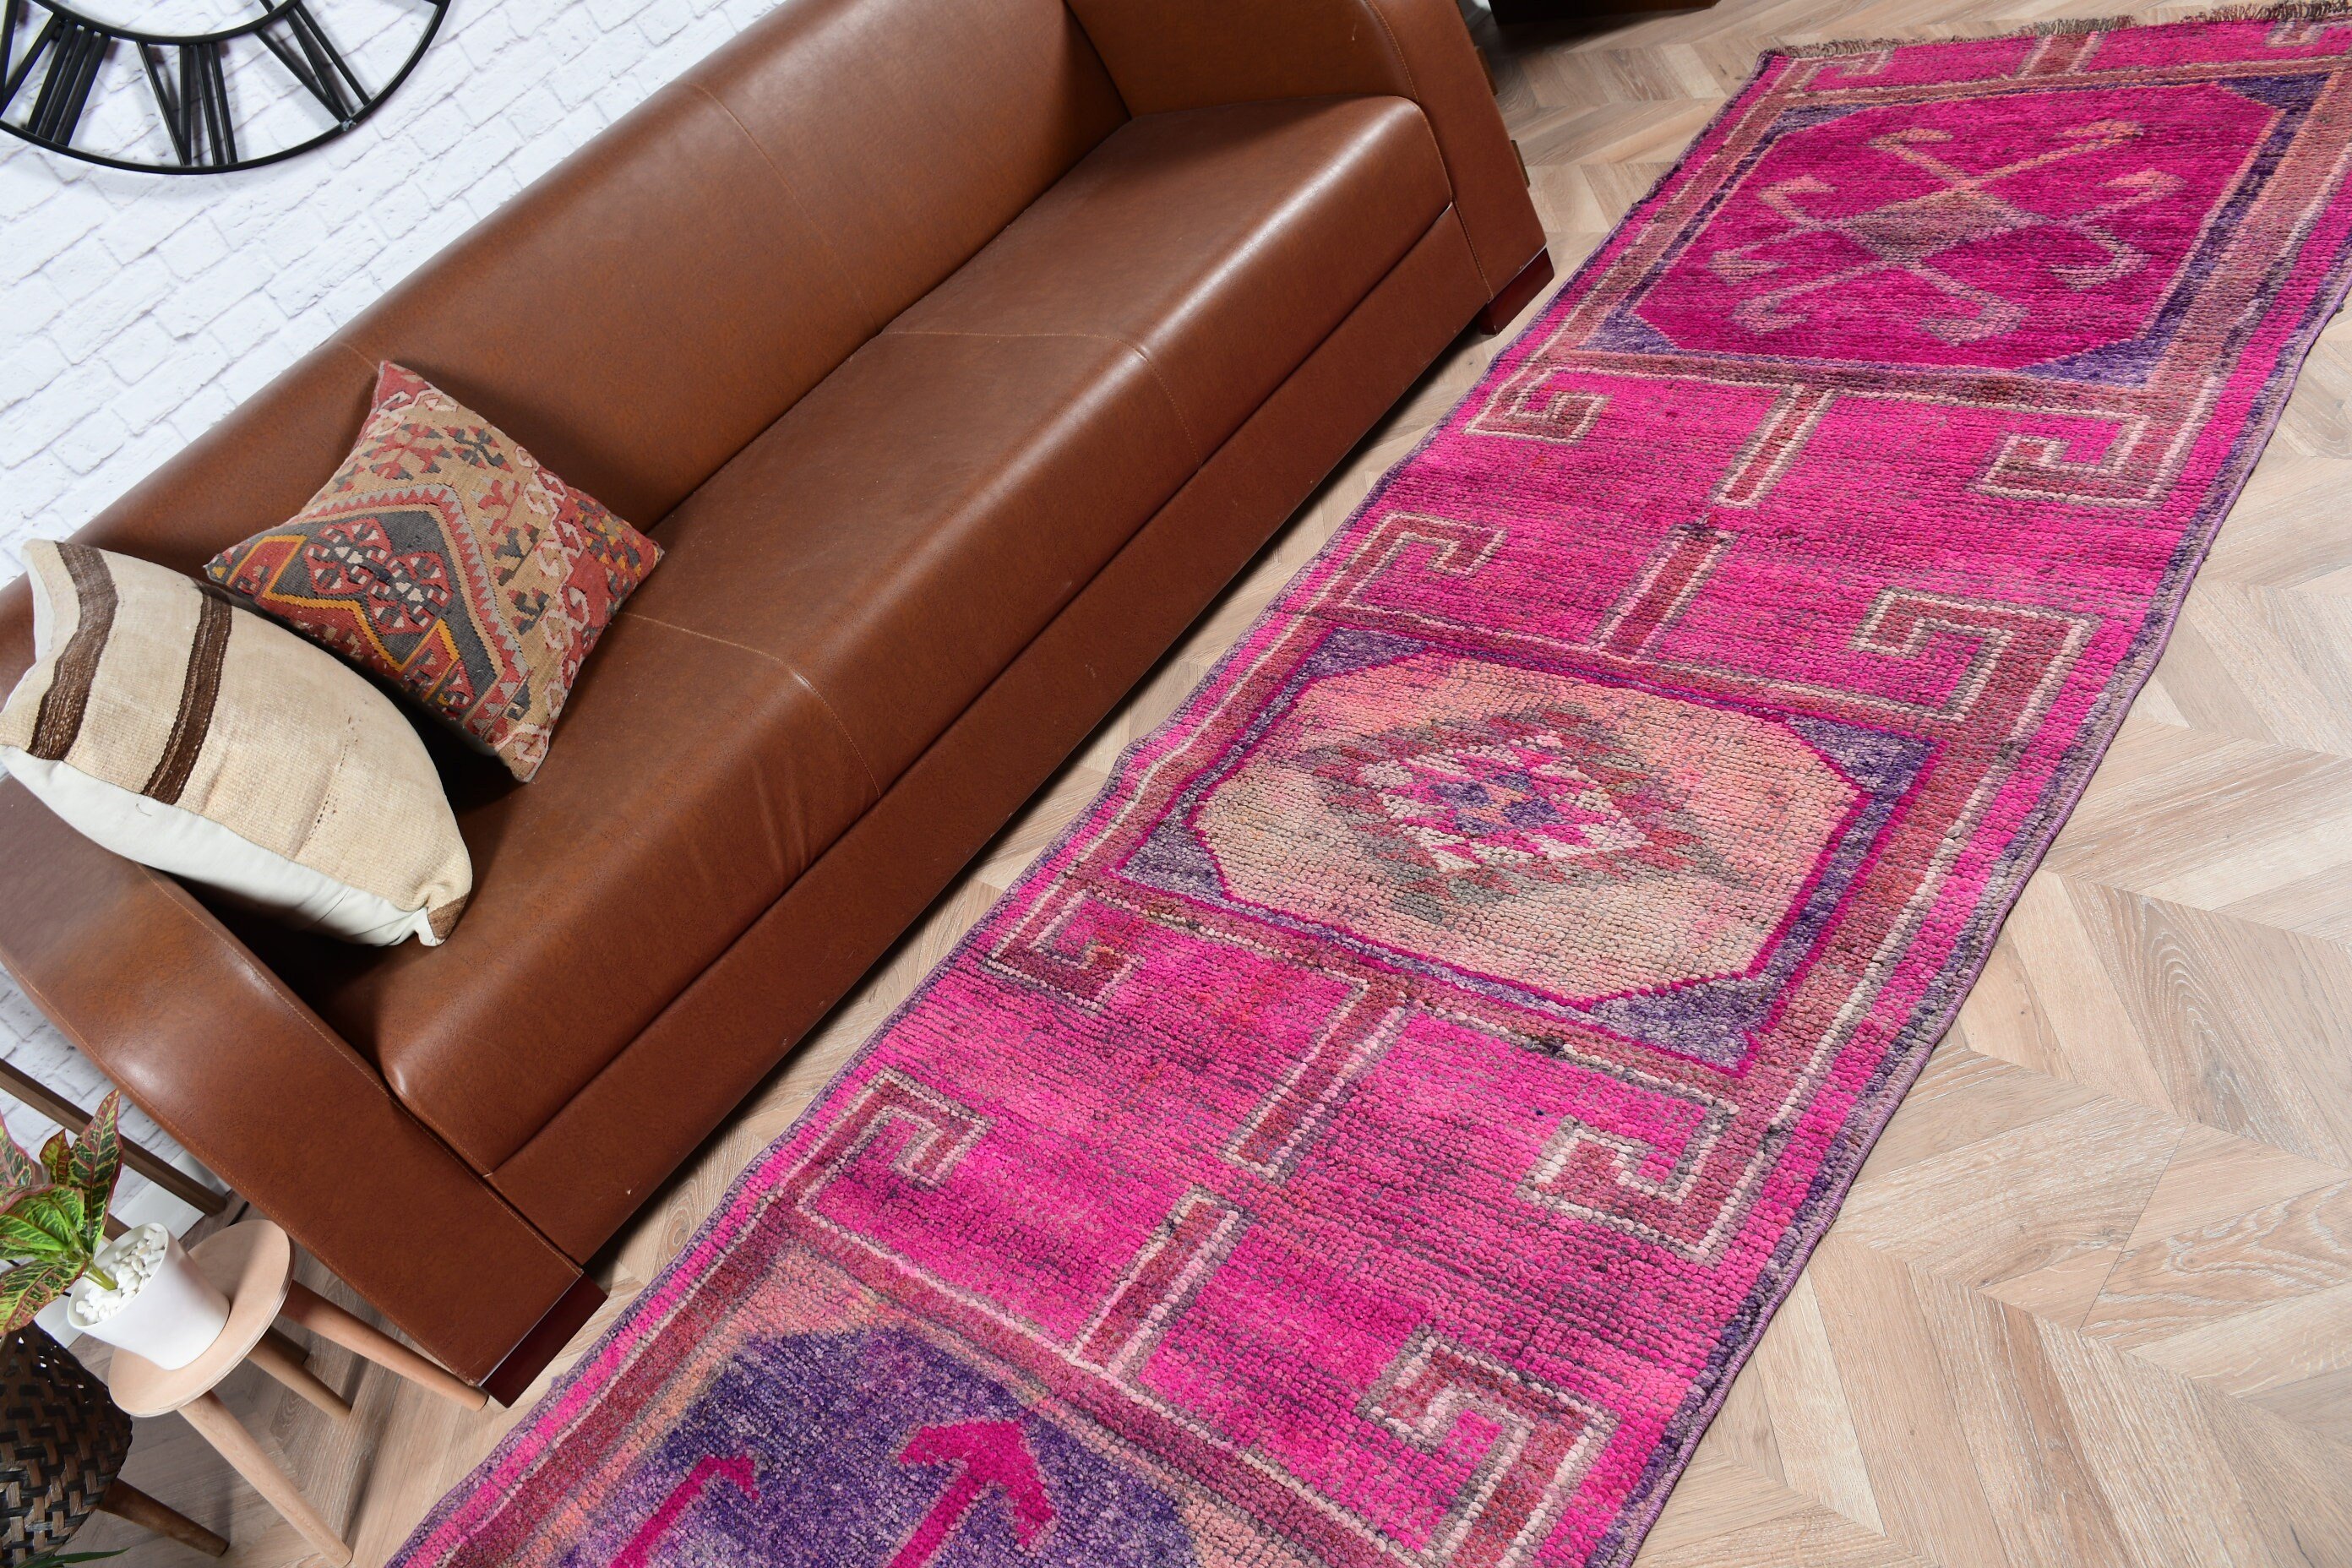 Vintage Rug, Pink Bedroom Rug, Corridor Rug, 3.3x10.6 ft Runner Rug, Hallway Rugs, Turkish Rugs, Oushak Rug, Rugs for Corridor, Floor Rug